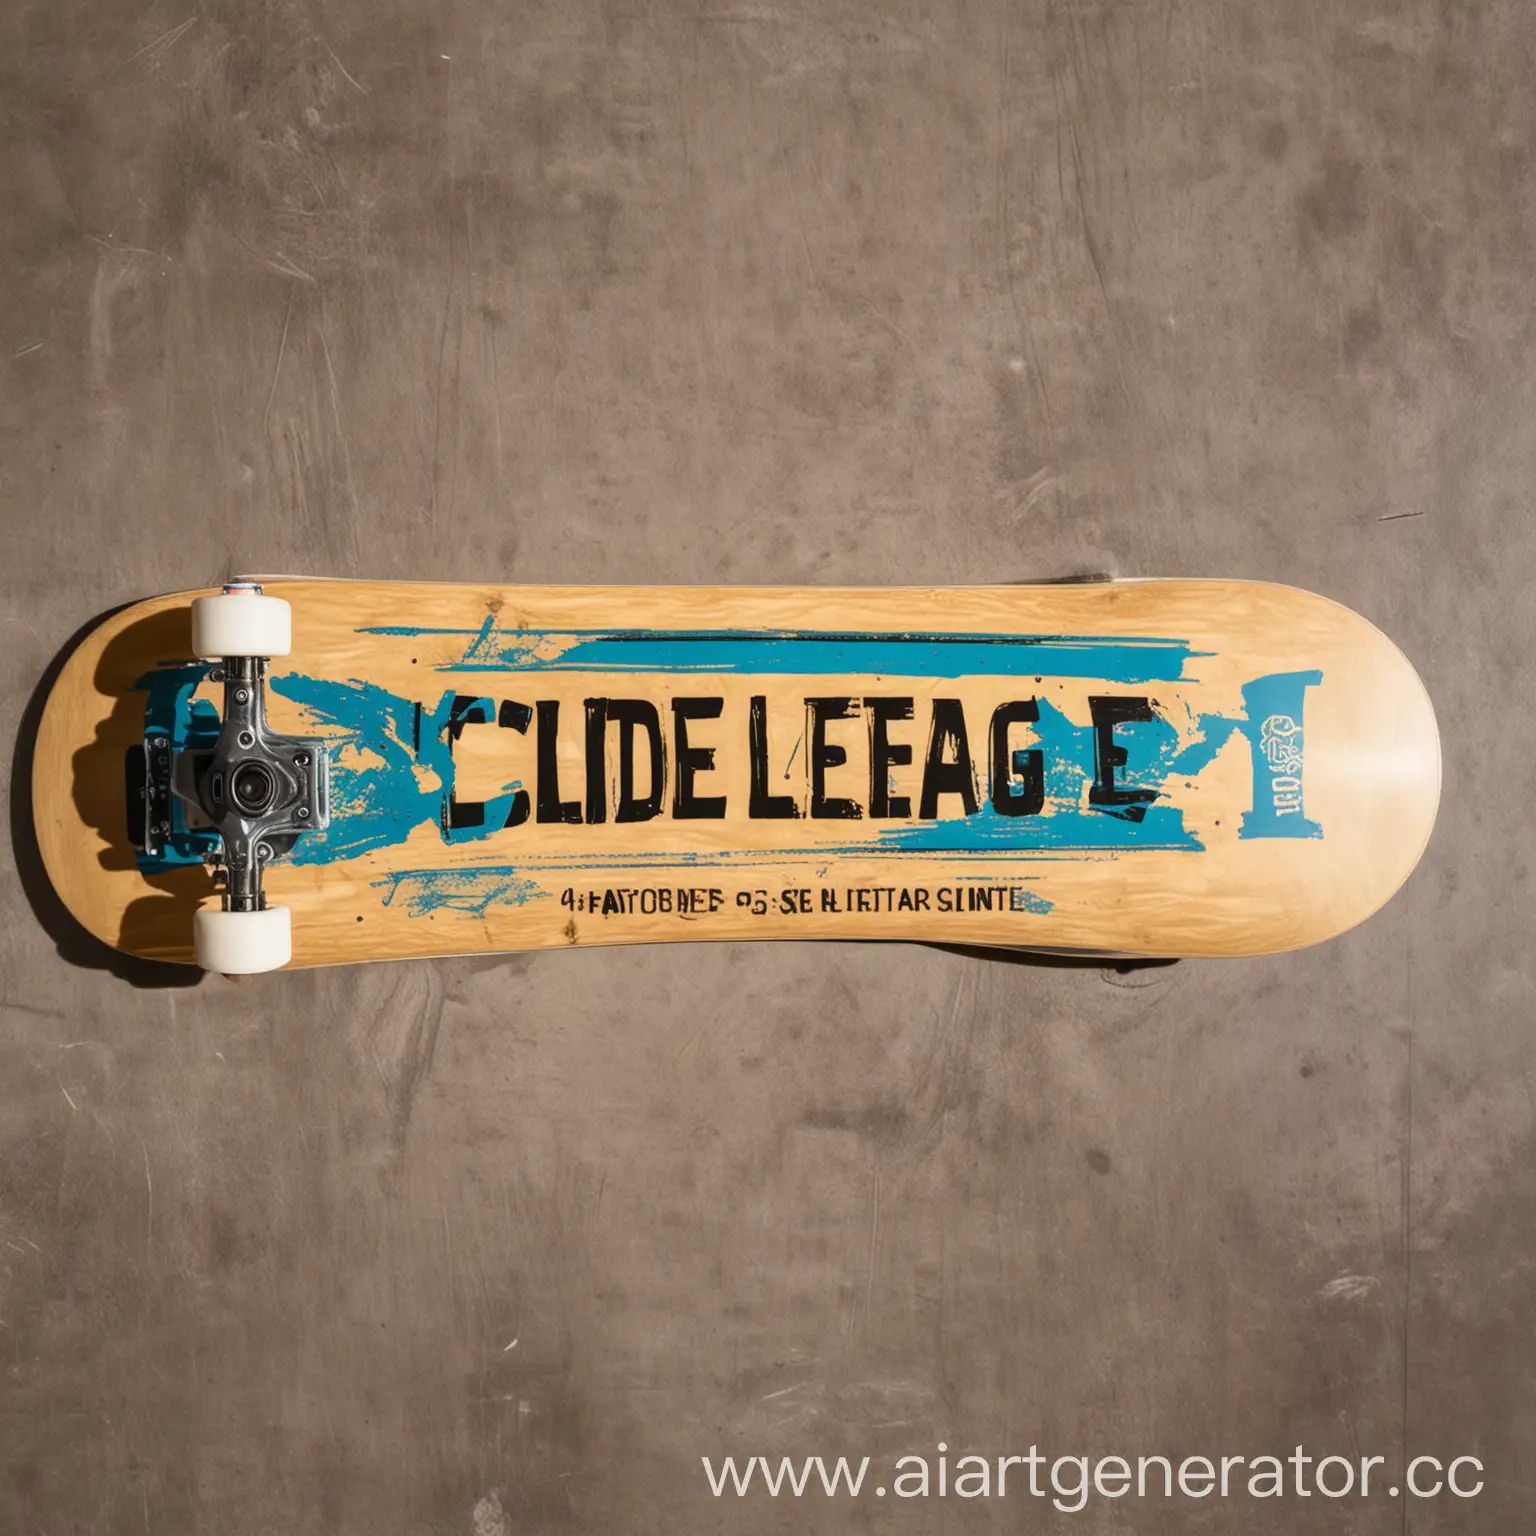 картинка скейтборда с надписью Slide League 